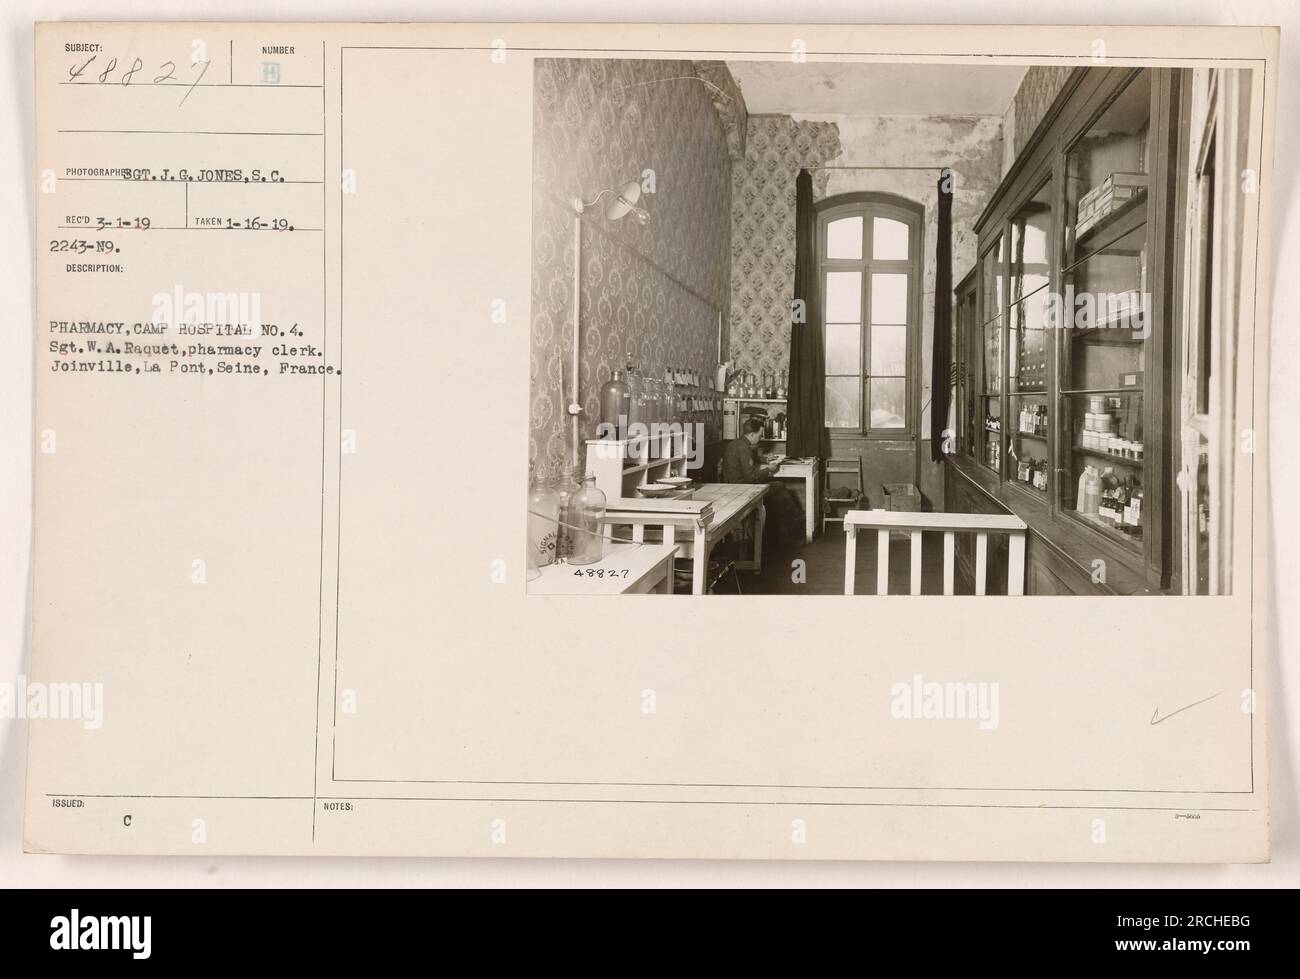 Ein Apothekenangestellter namens Sergeant W.A. Raquet im Camp Hospital No. 4 in Joinville, La Pont, seine, Frankreich. Das Foto wurde am 3. Januar 1919 aufgenommen. Das Bild zeigt den Apothekenbereich des Krankenhauses. Stockfoto